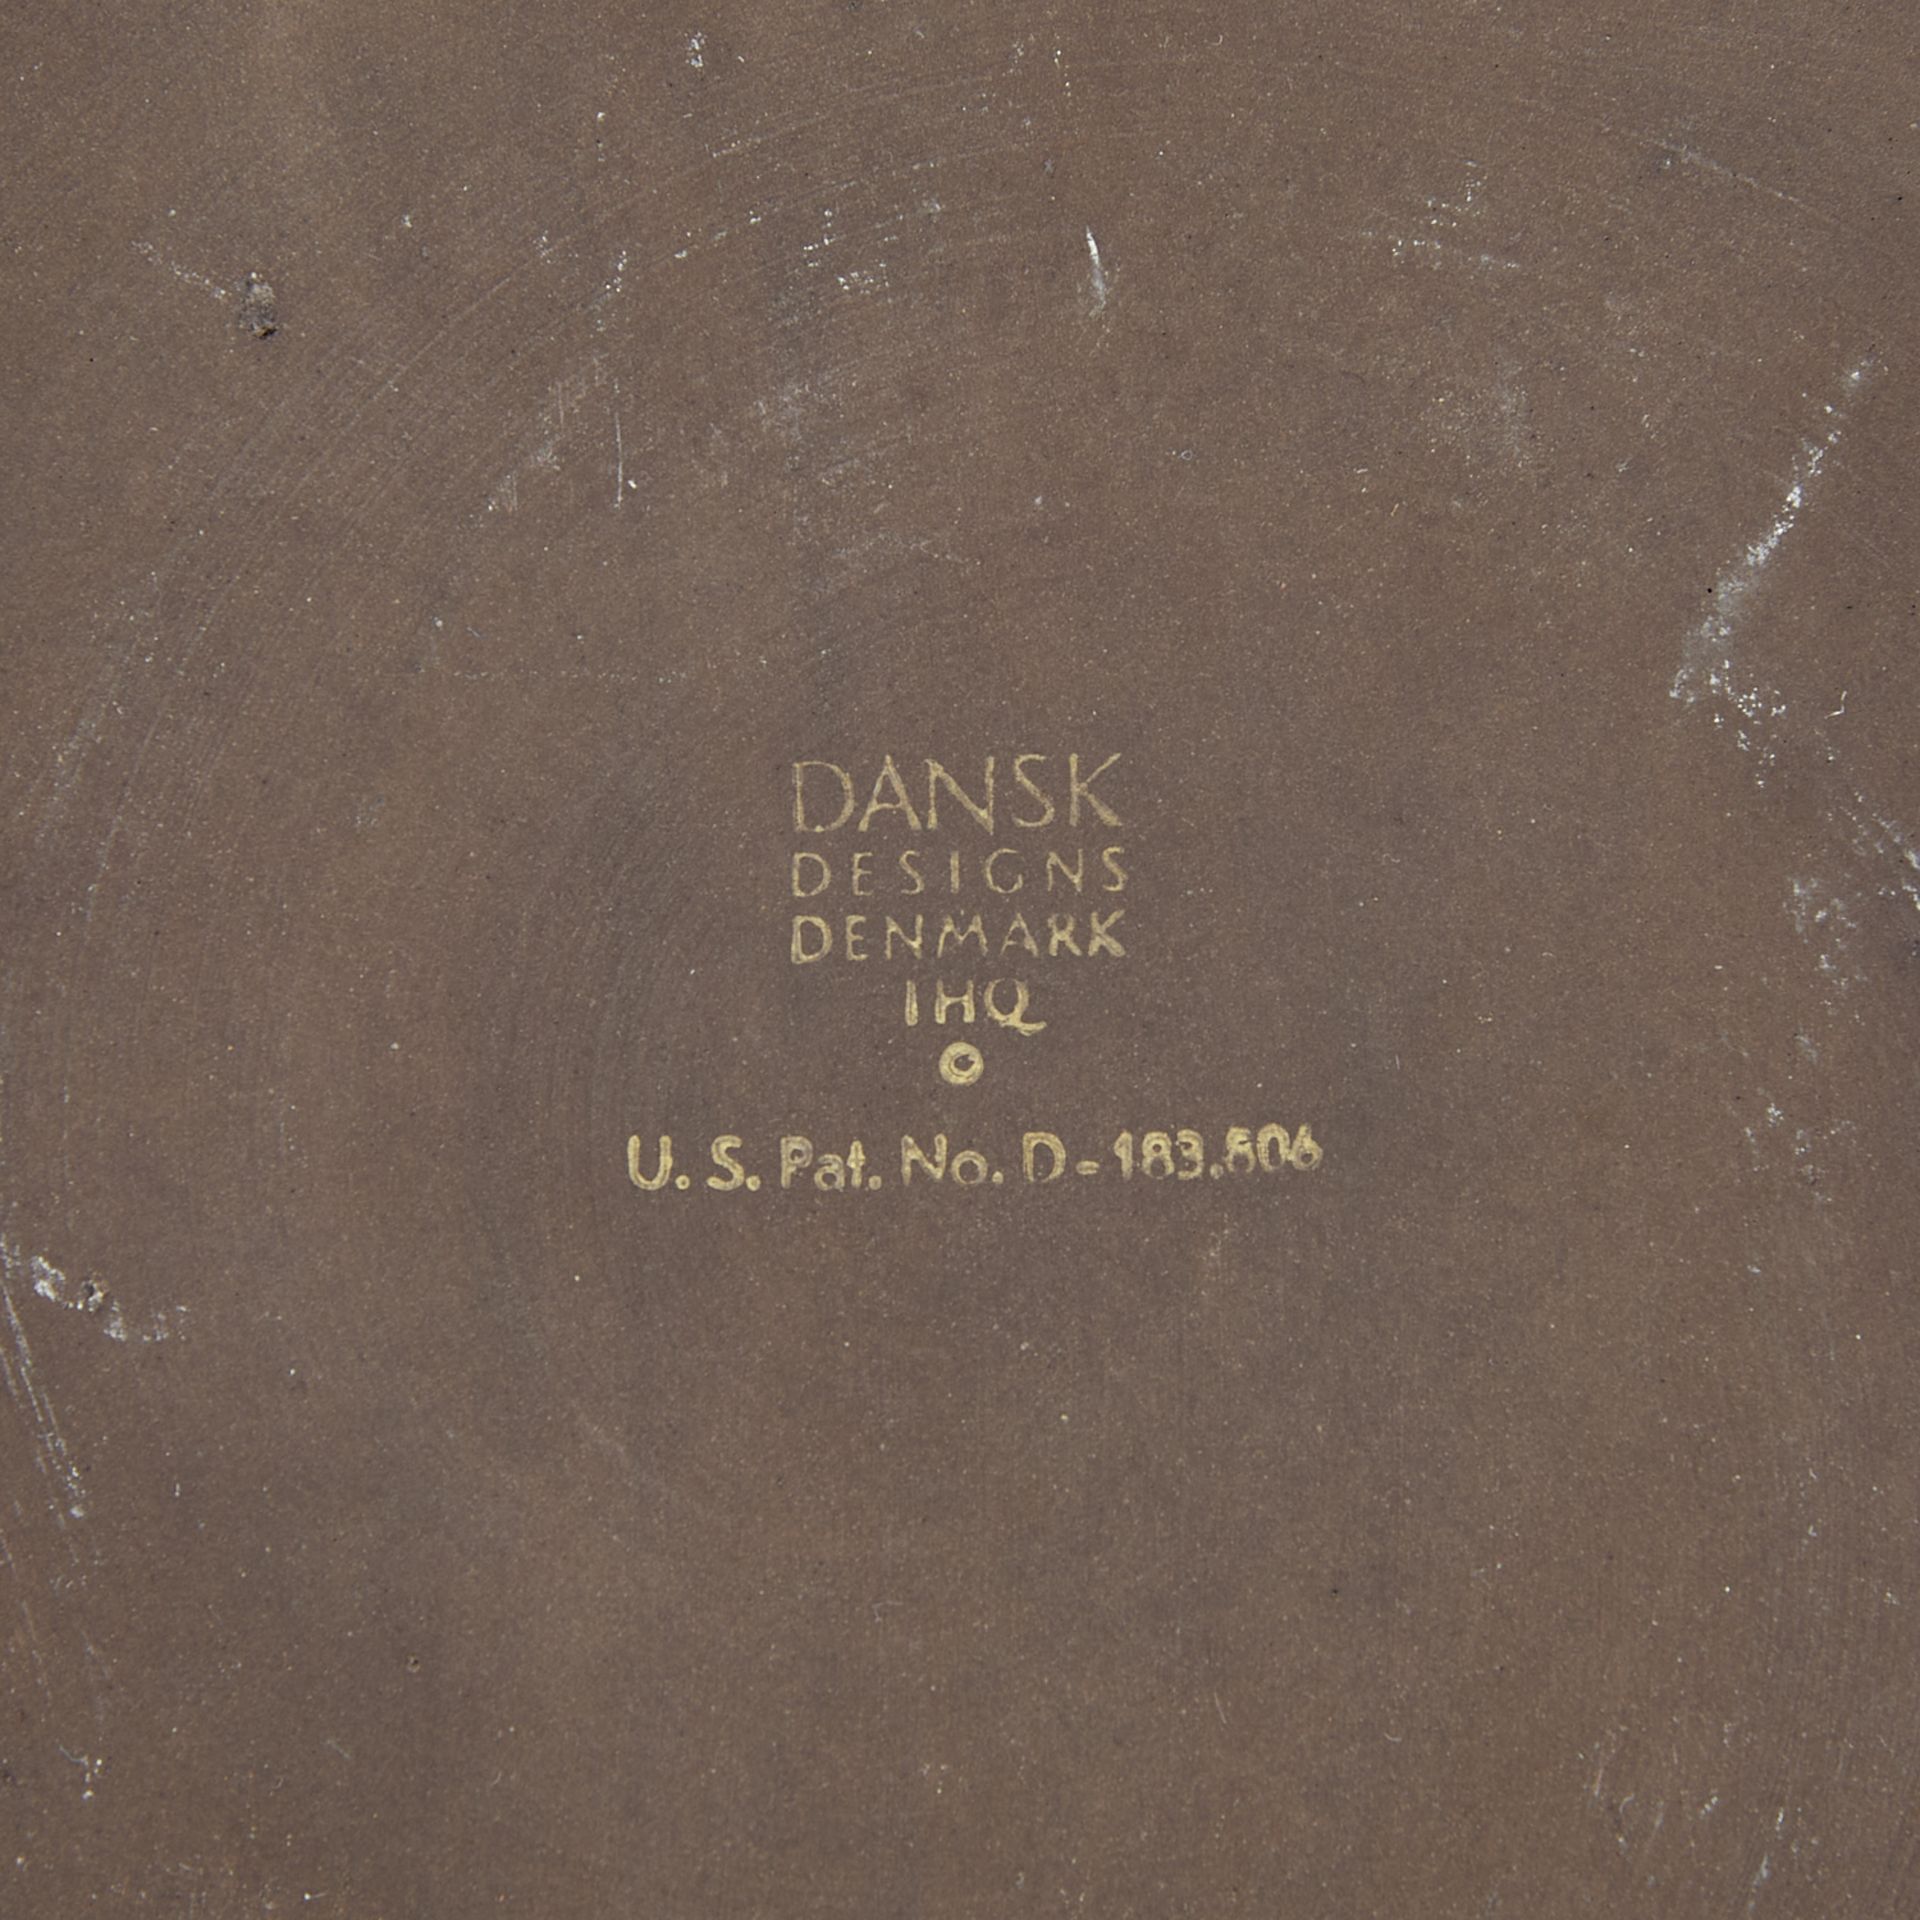 54 Pcs Dansk Flamestone Ceramic Tableware - Image 18 of 23